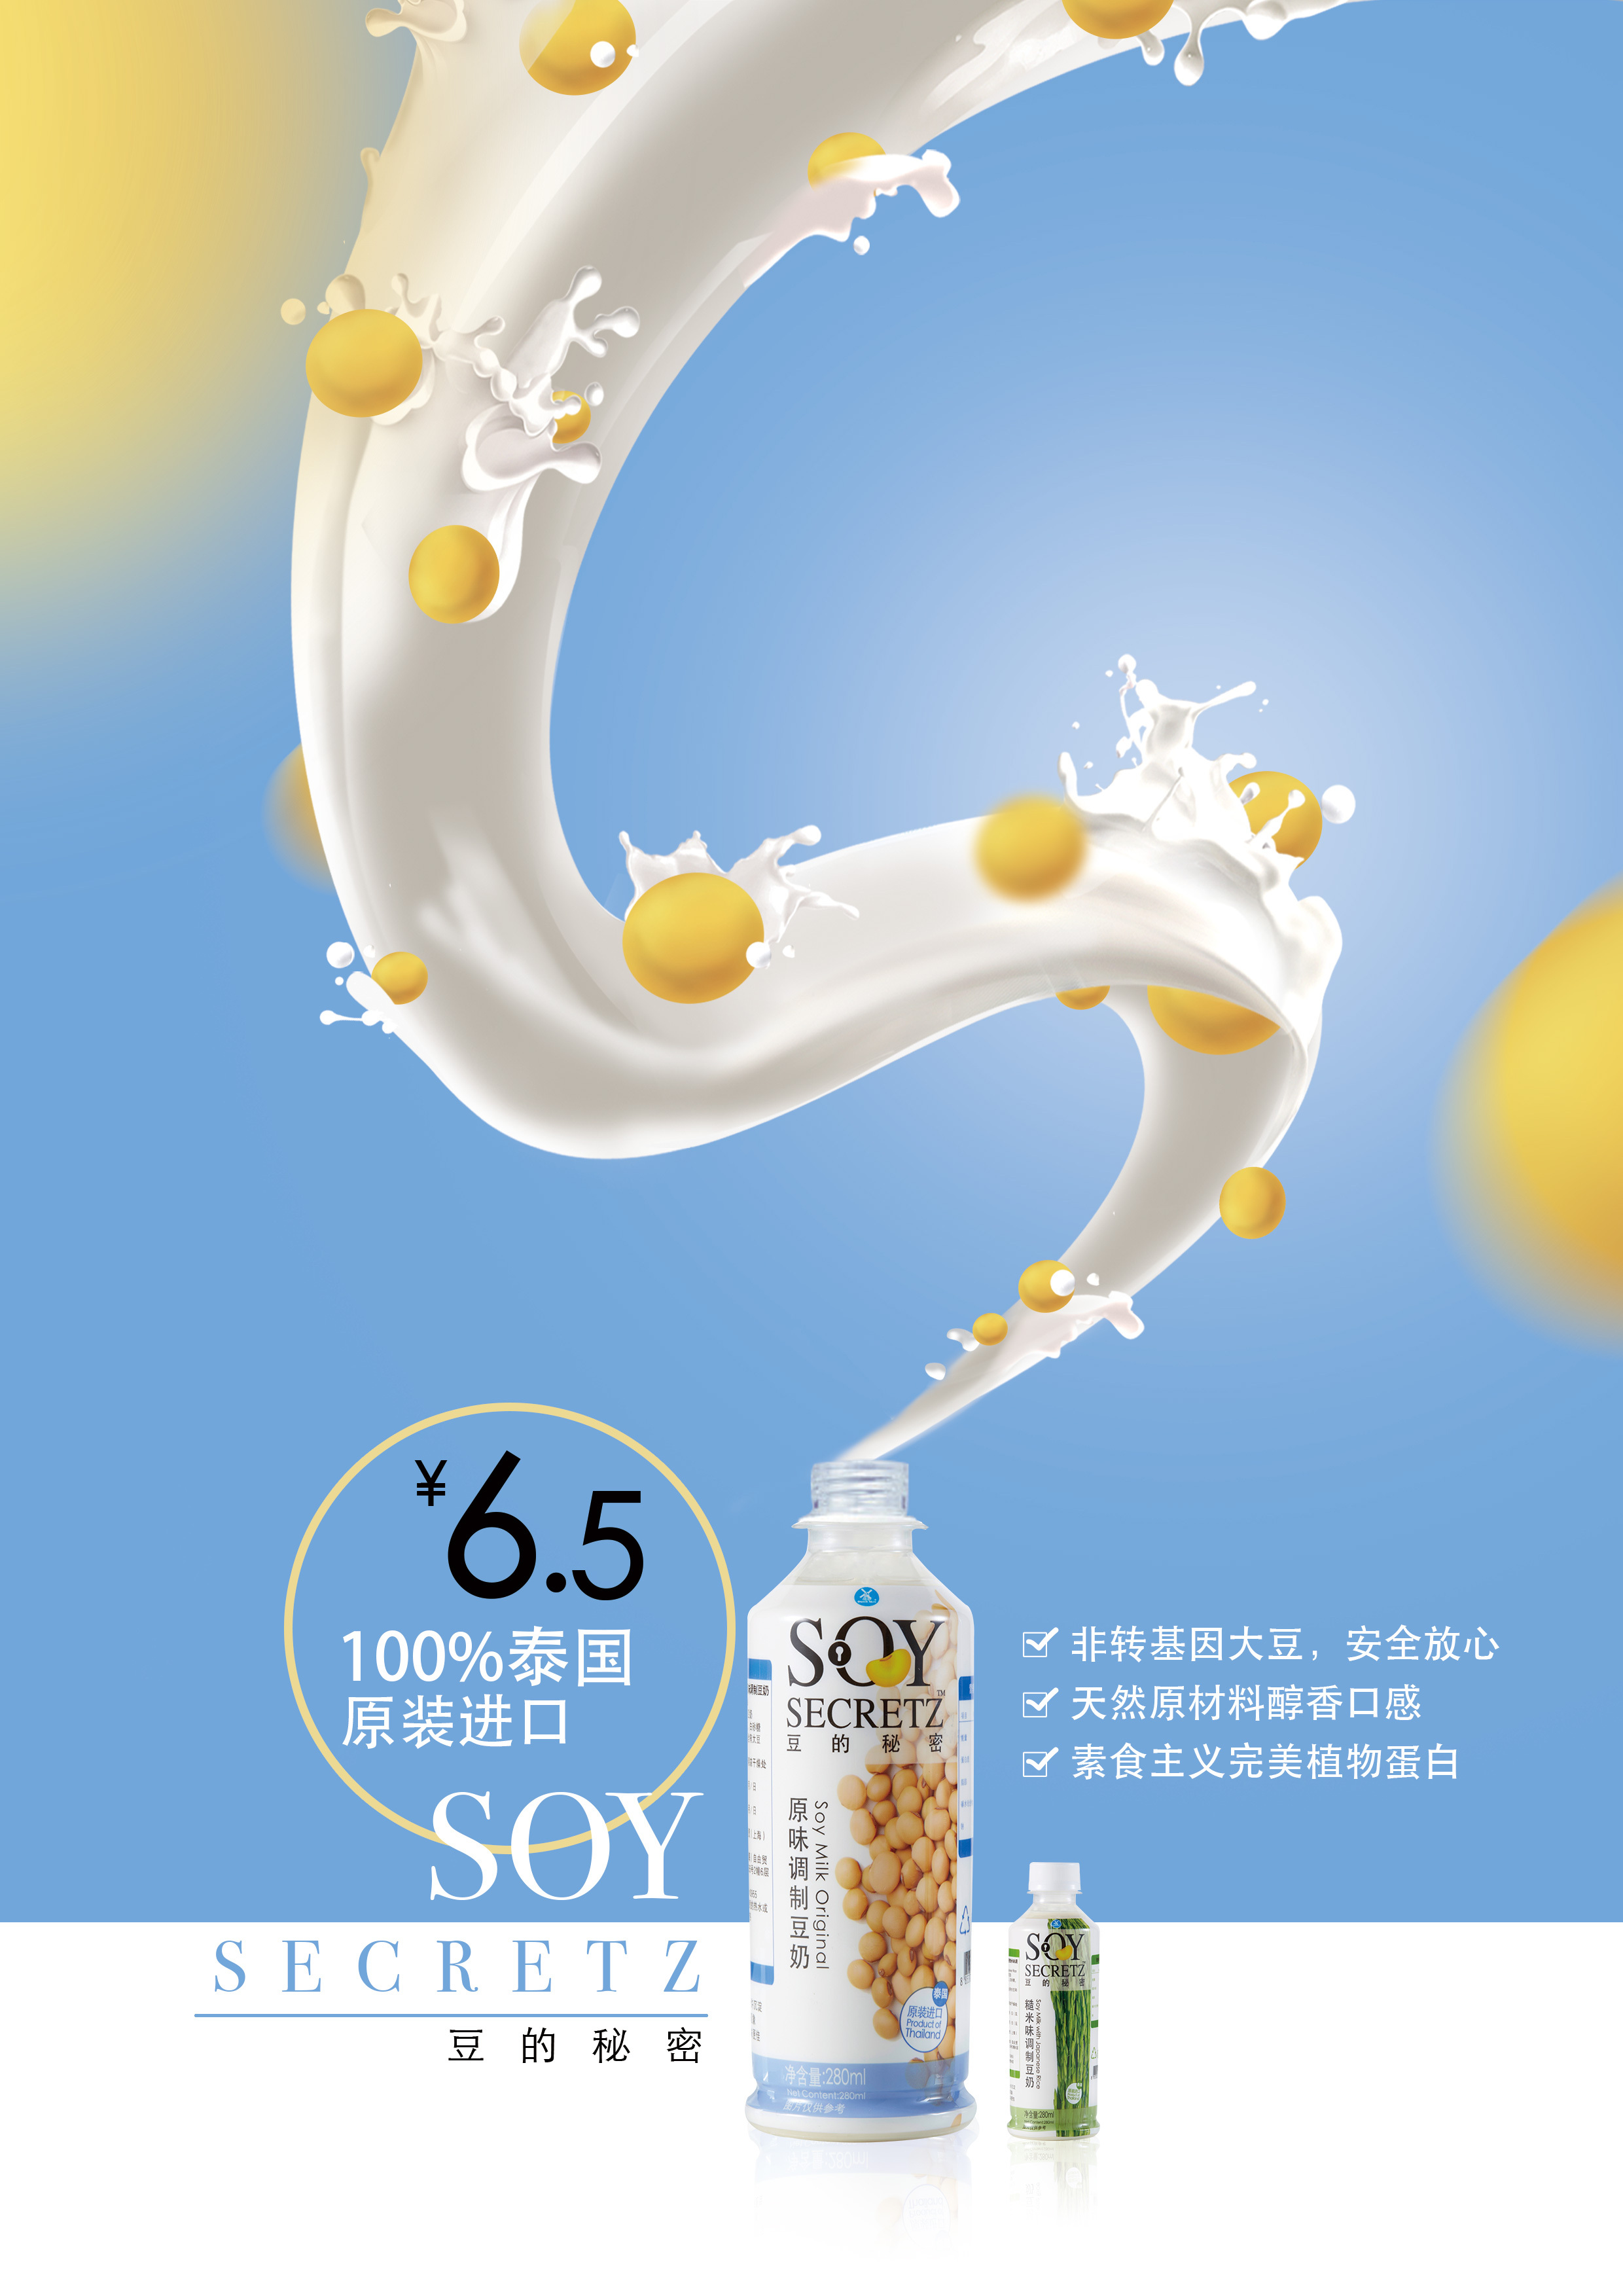 豆奶海报设计 饮料宣传广告海报设计 健康饮品招贴设计